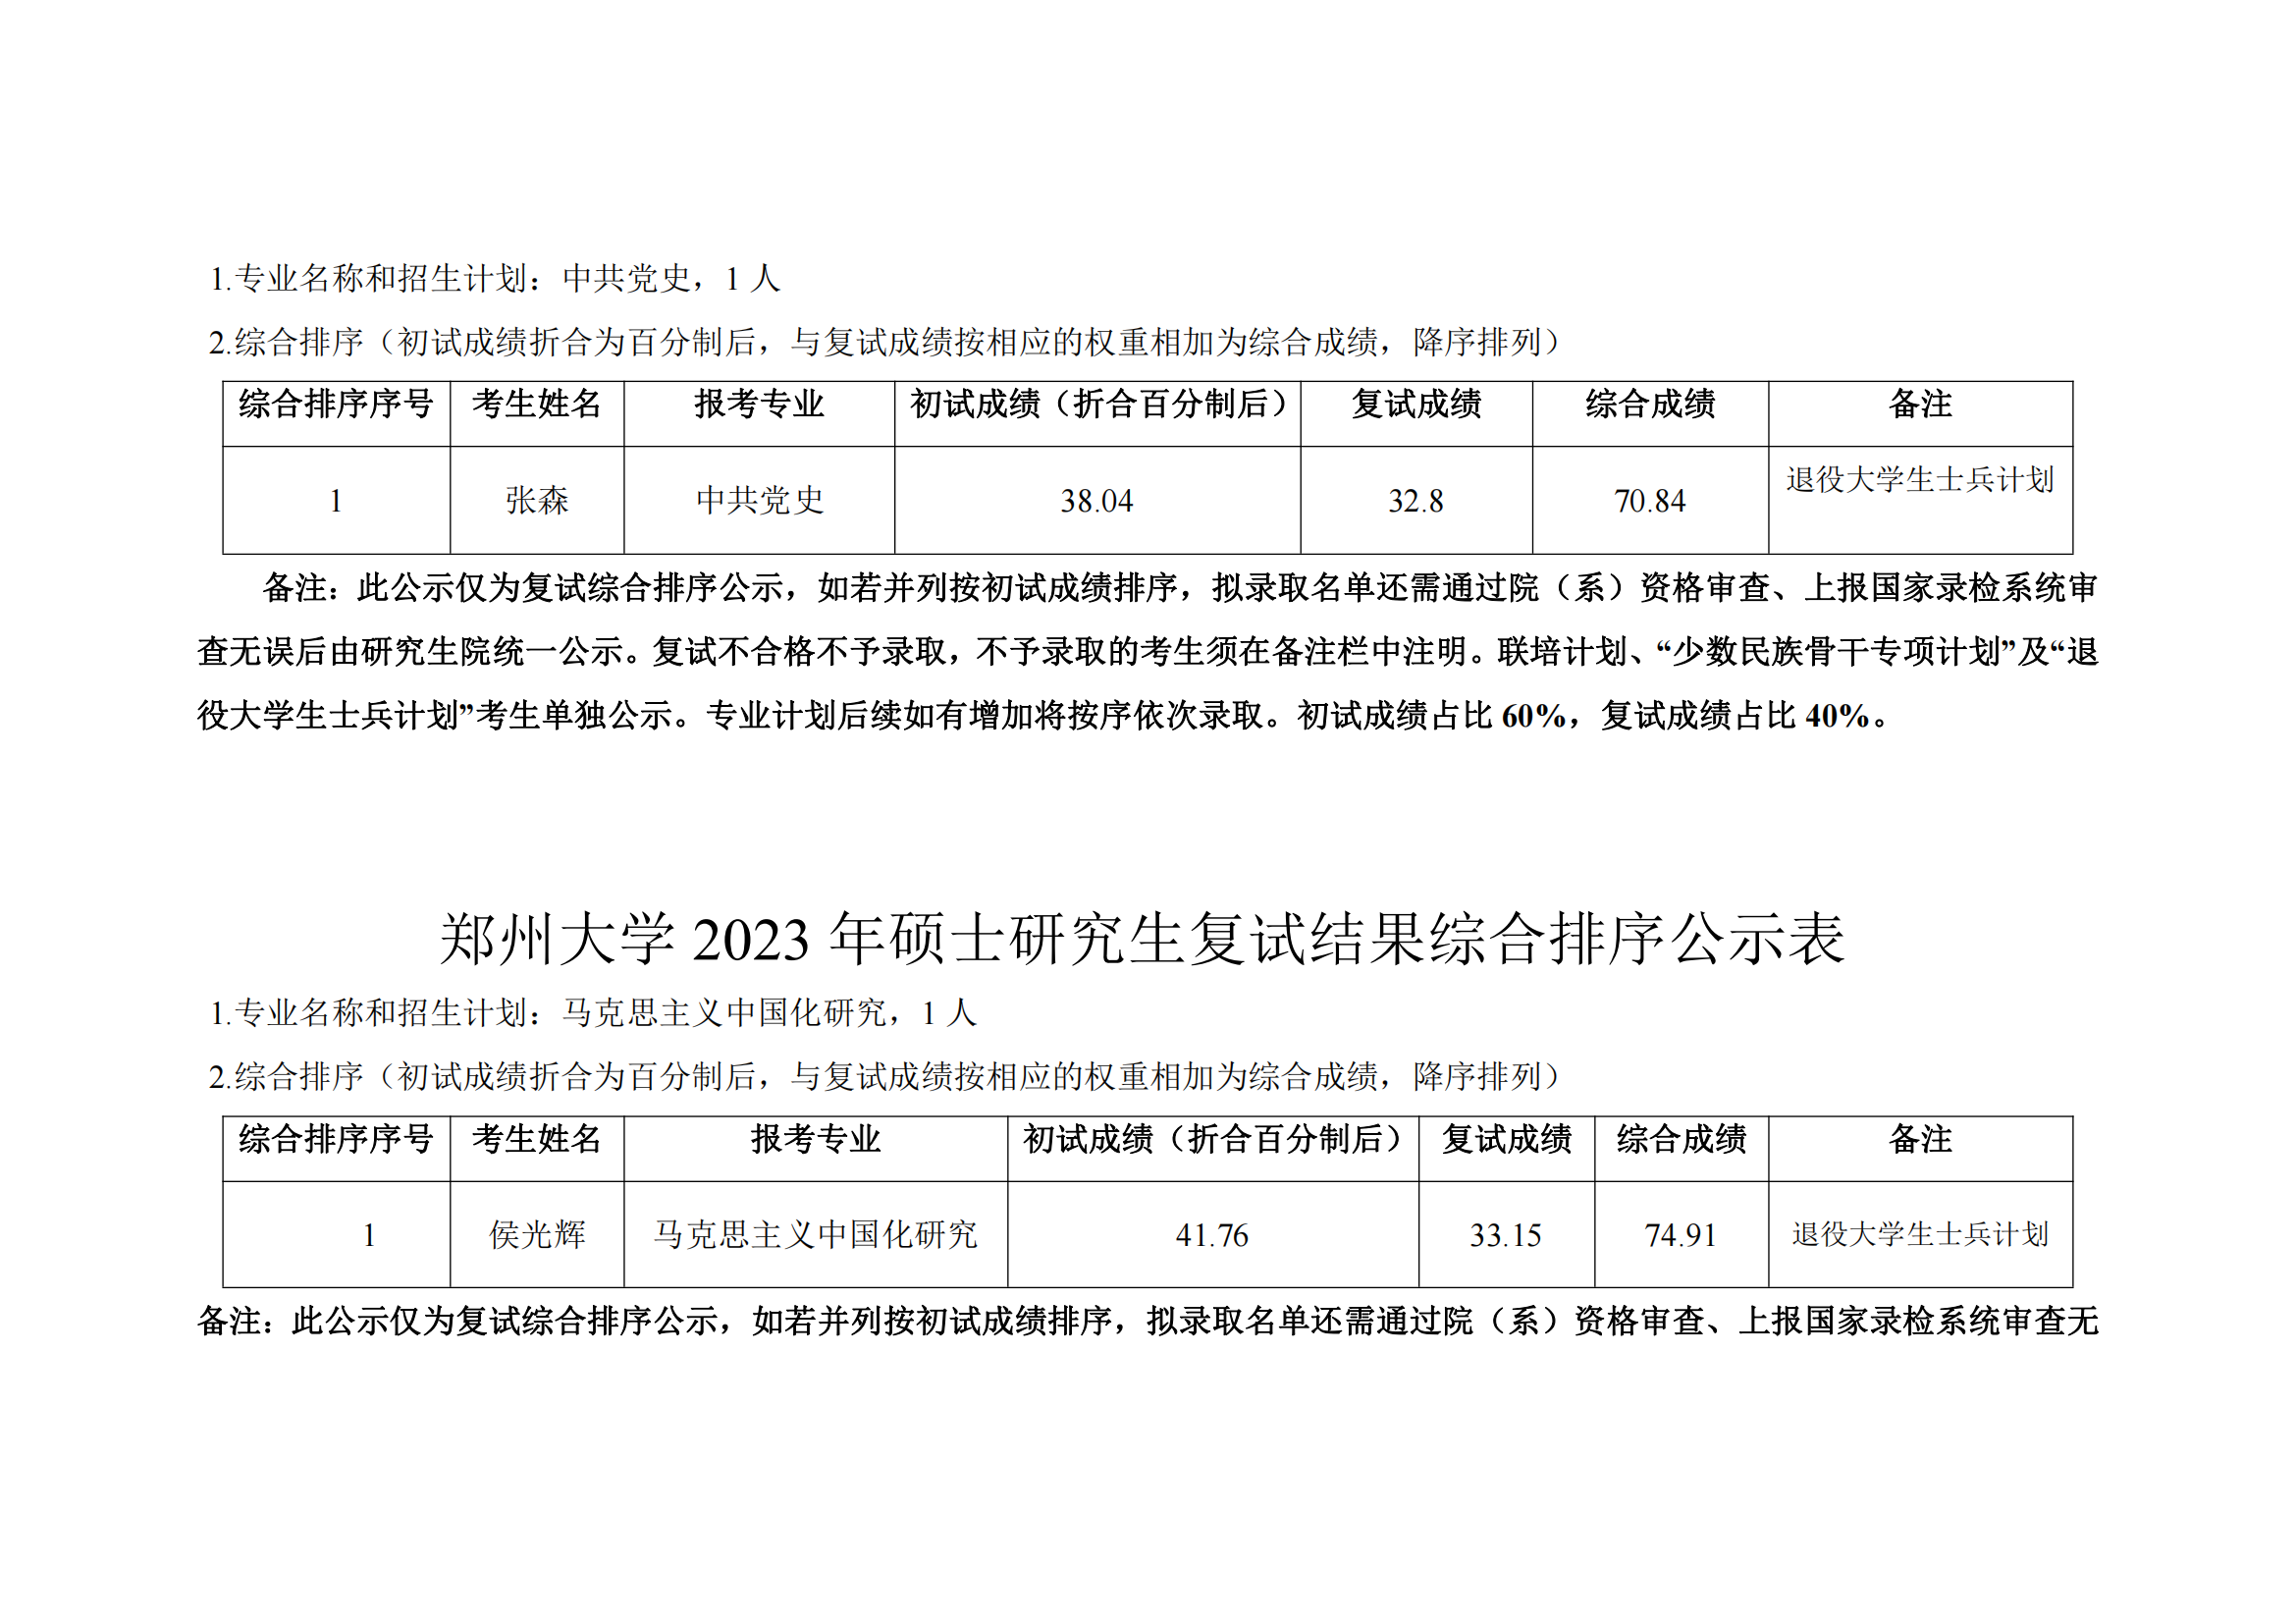 郑州大学马克思主义学院2023年硕士研究生复试结果综合排序公示表_17.png